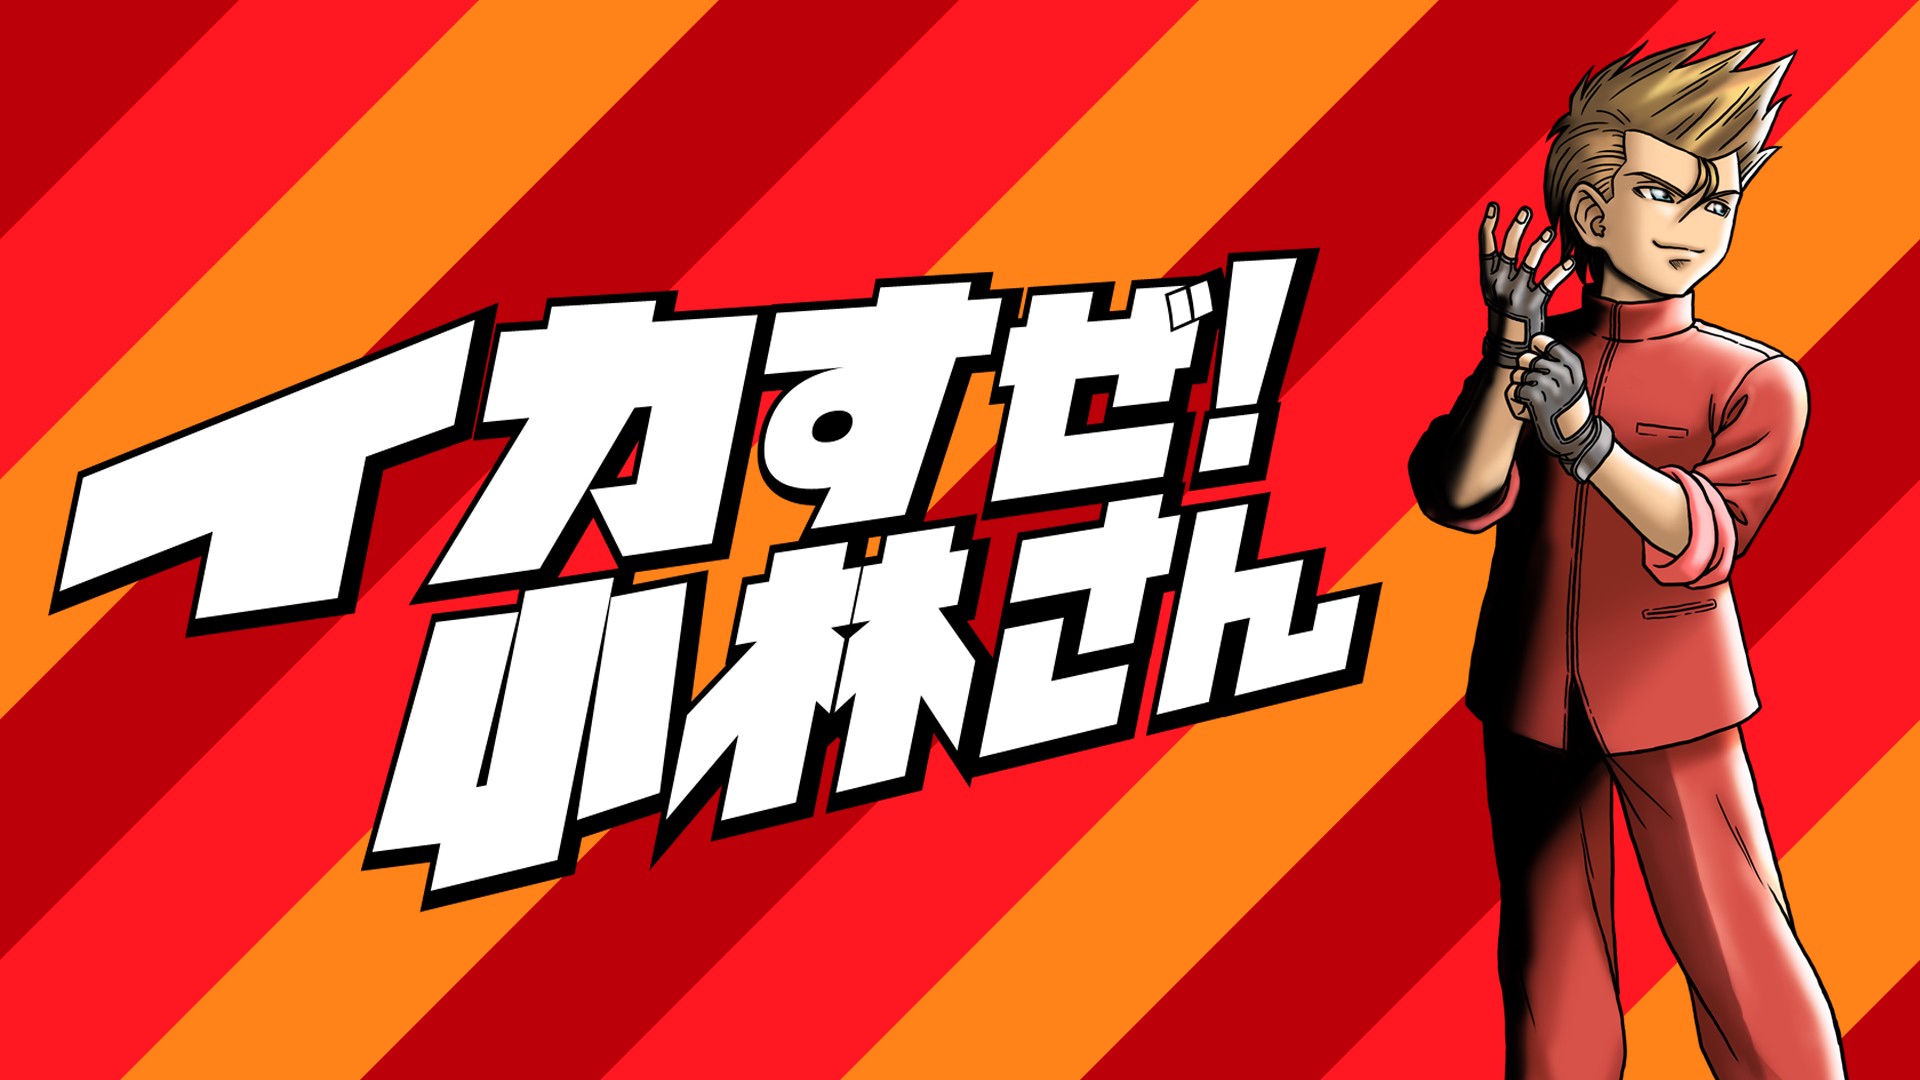 Le logo de Stay Cool, Kobayashi-san avec le héros sur fond rouge et orange